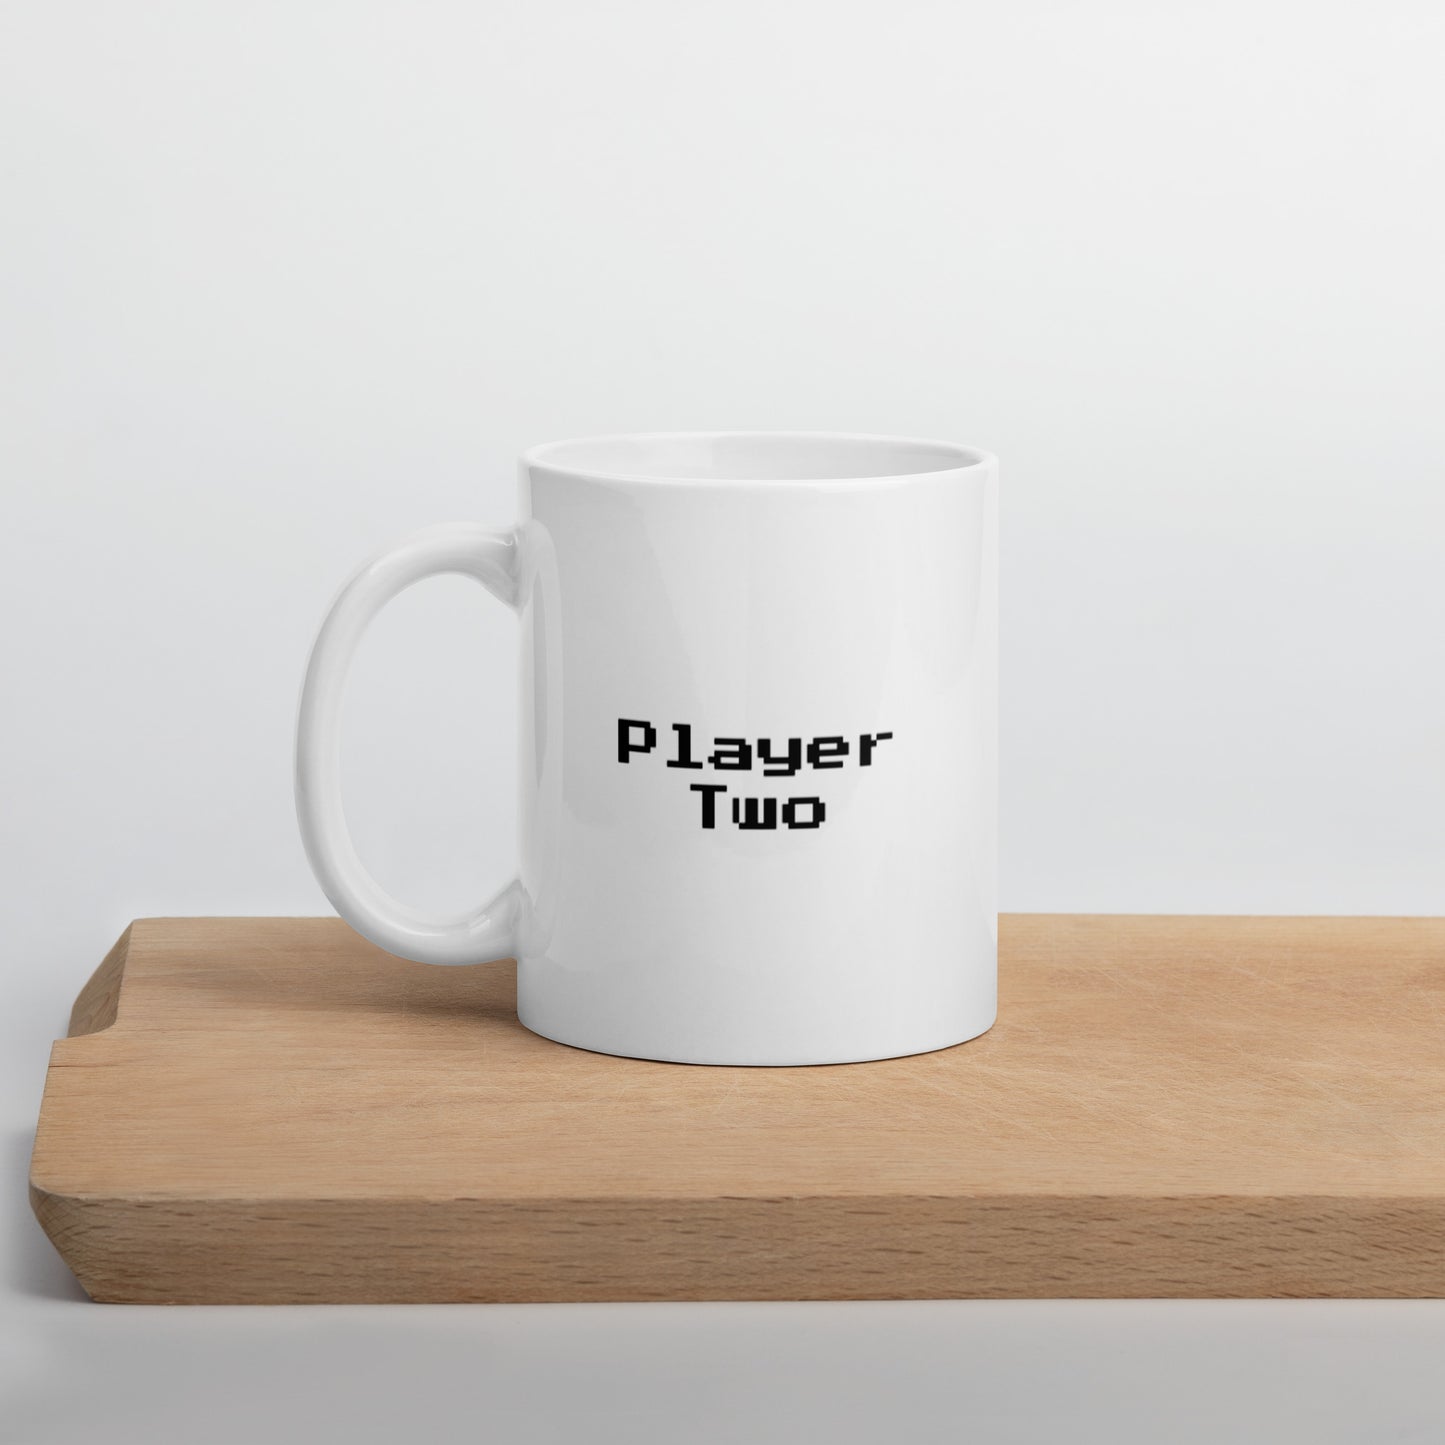 Player two - Mug